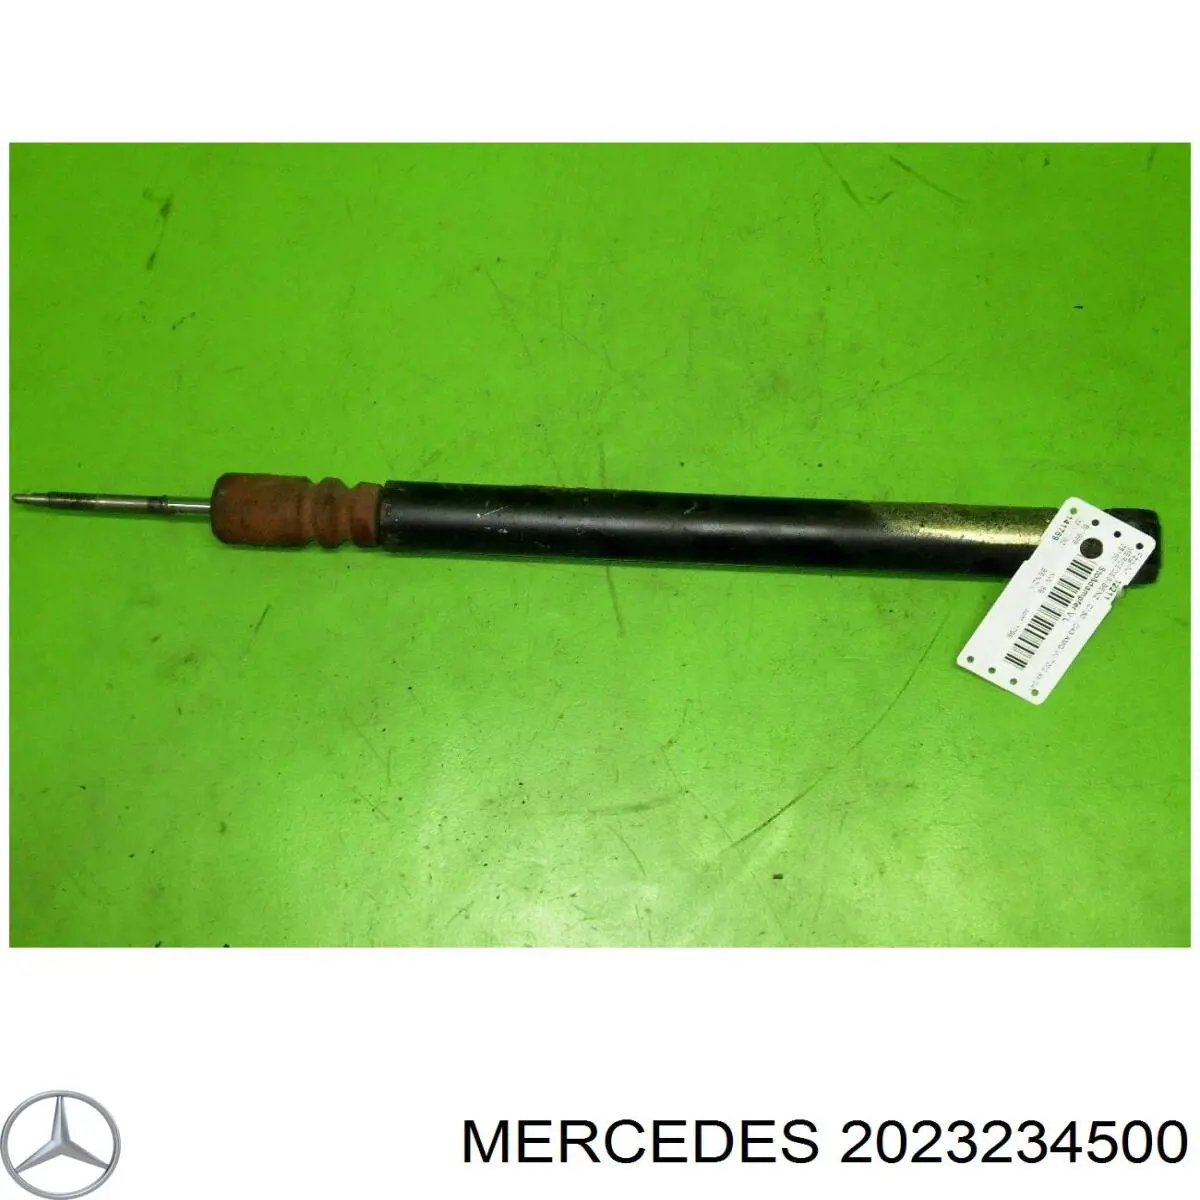 2023234500 Mercedes амортизатор передний